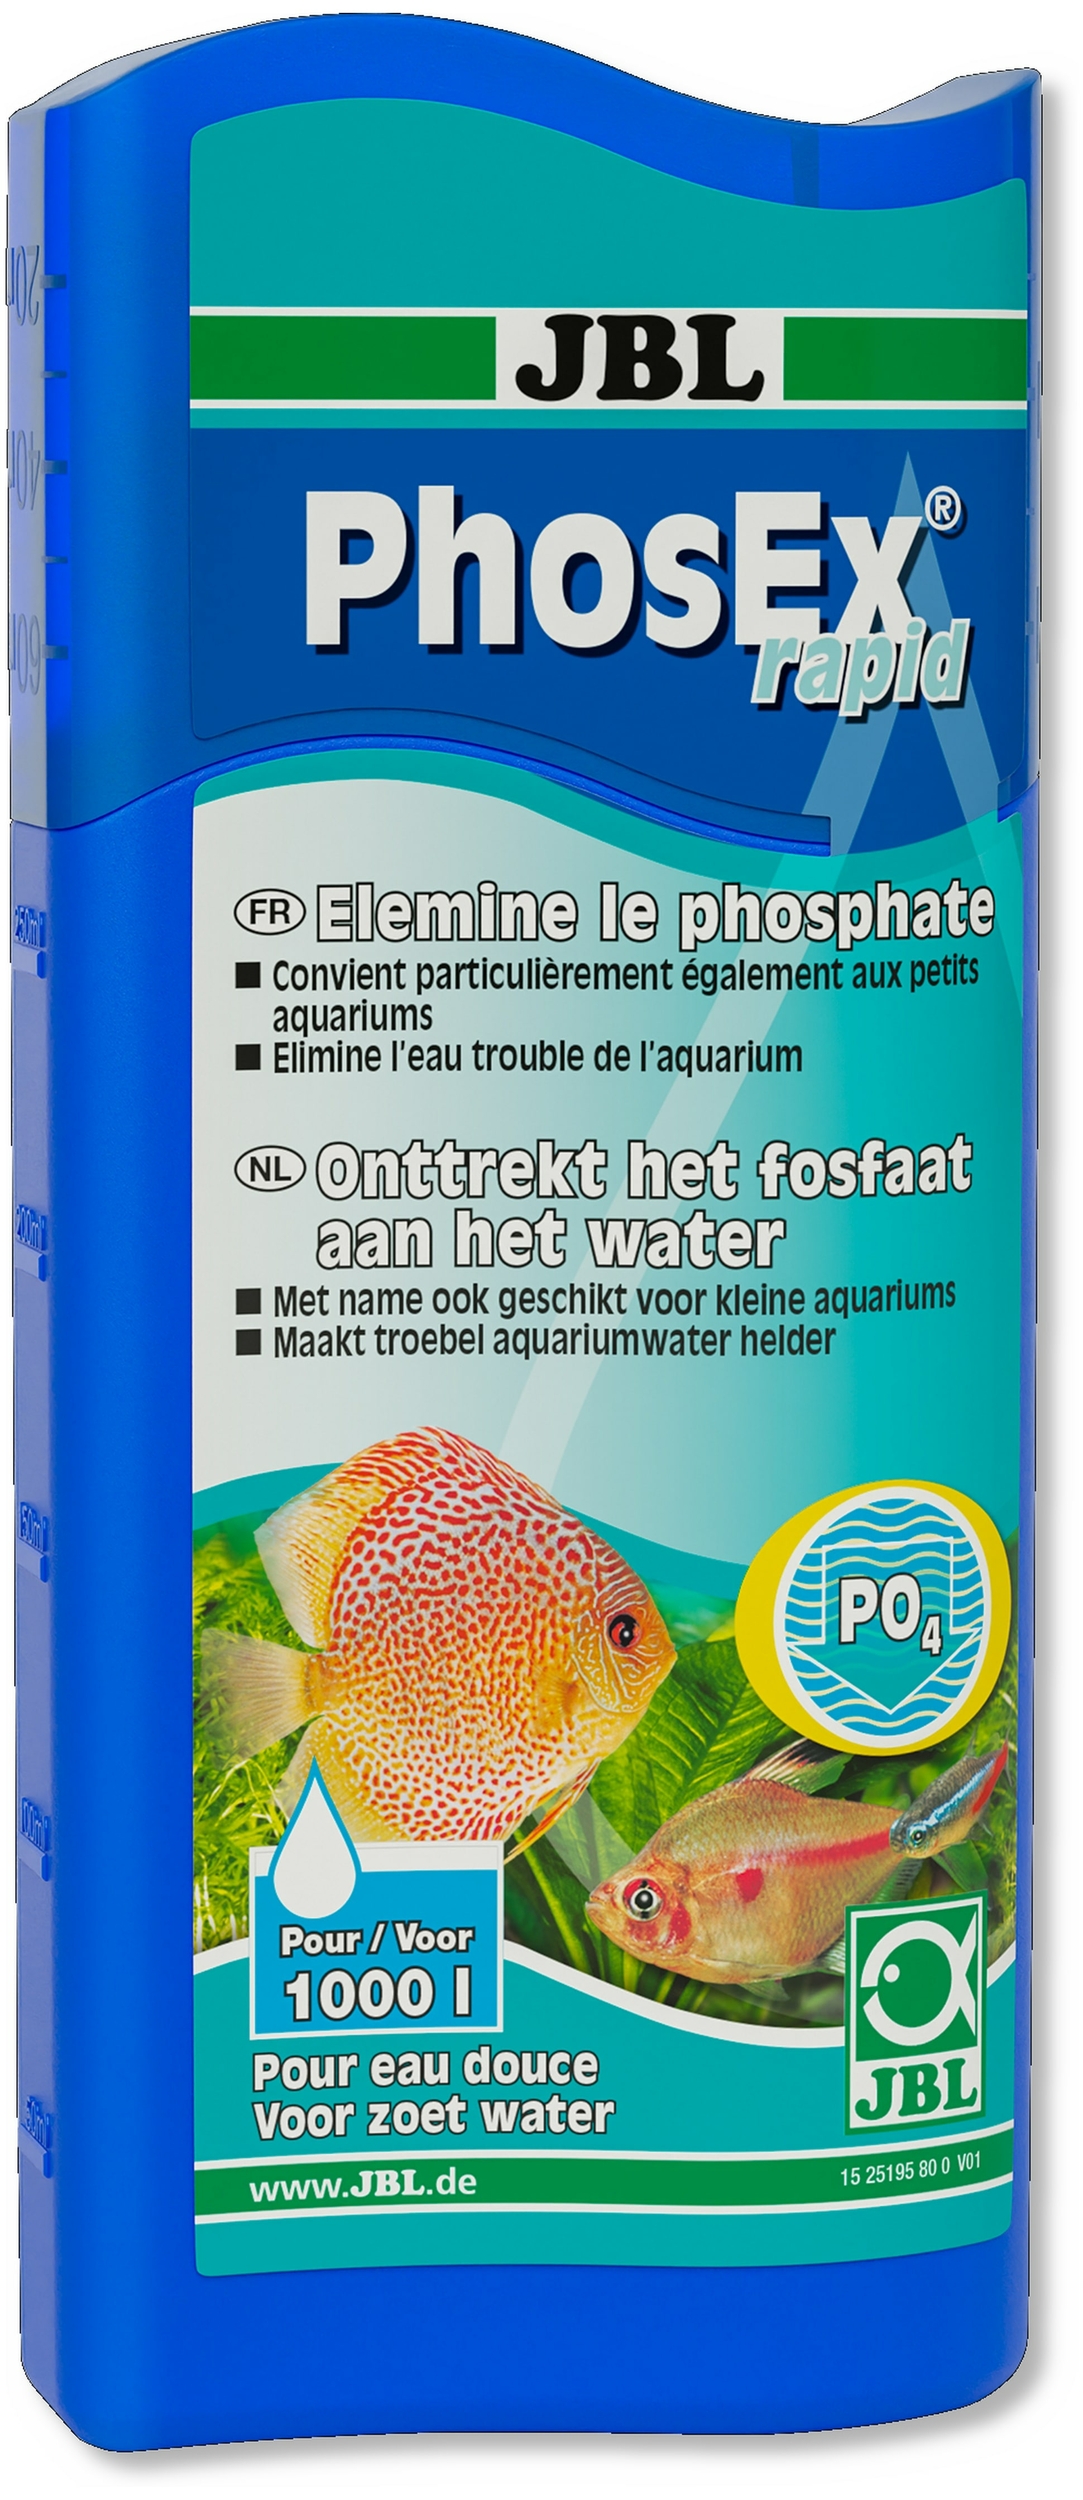 jbl-phosex-rapid-250-ml-elimine-en-quelques-heures-les-phosphates-et-stop-la-proliferation-des-algues